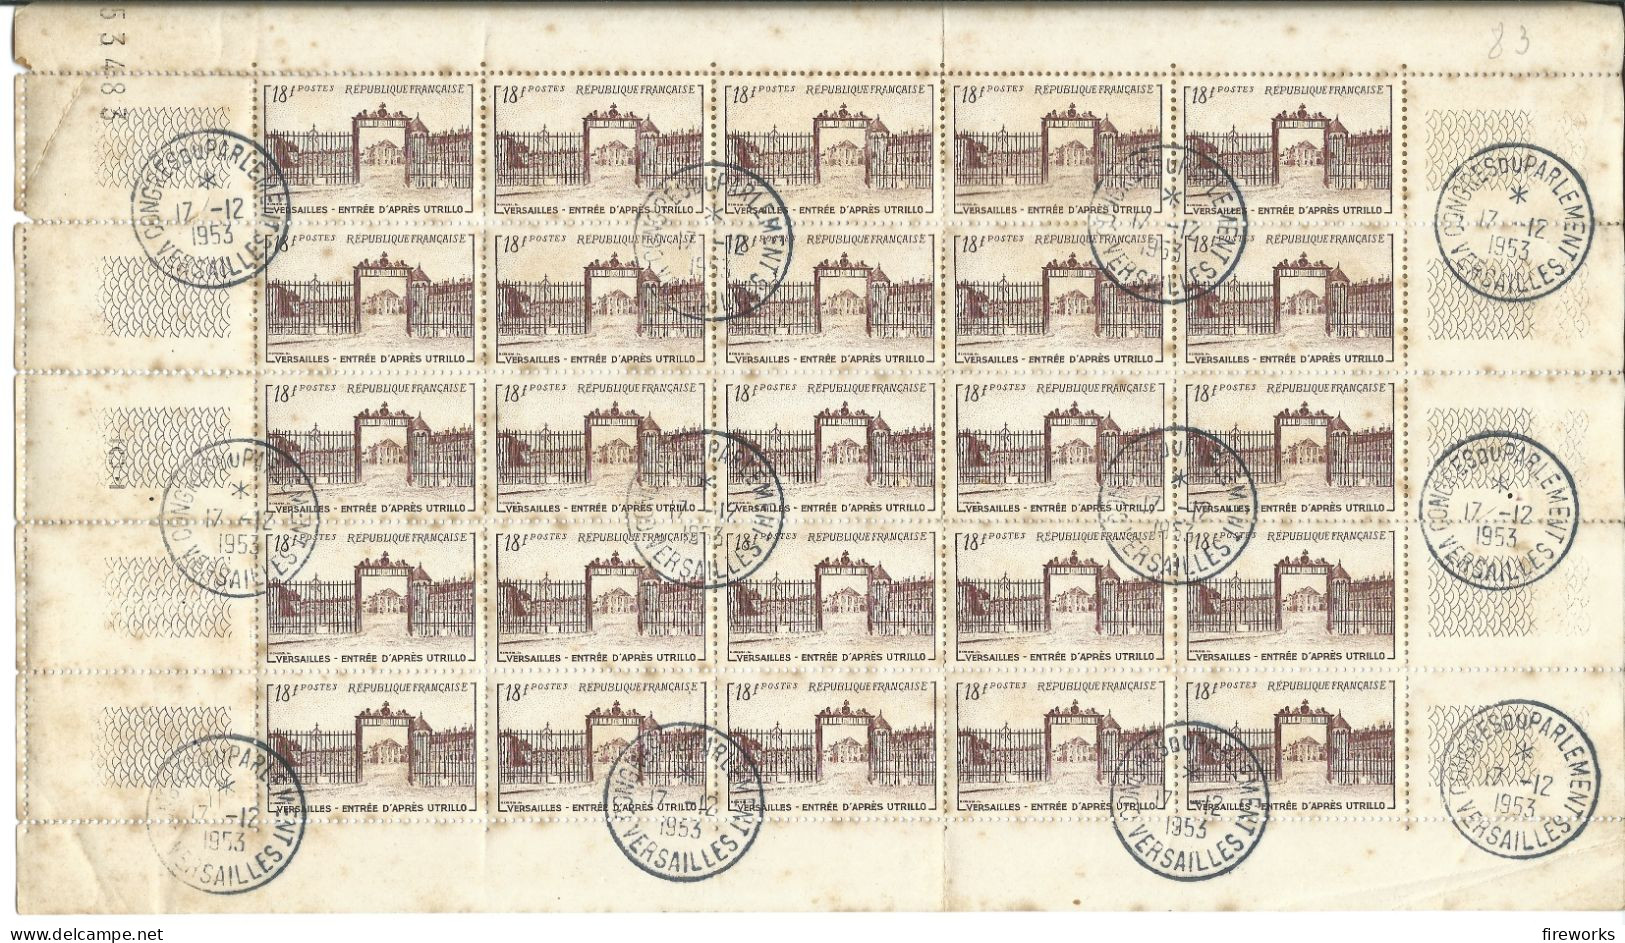 FRANCE BLOC FEUILLET 1952 YT 953 - Congrès De Versailles 1953 - Used Stamps